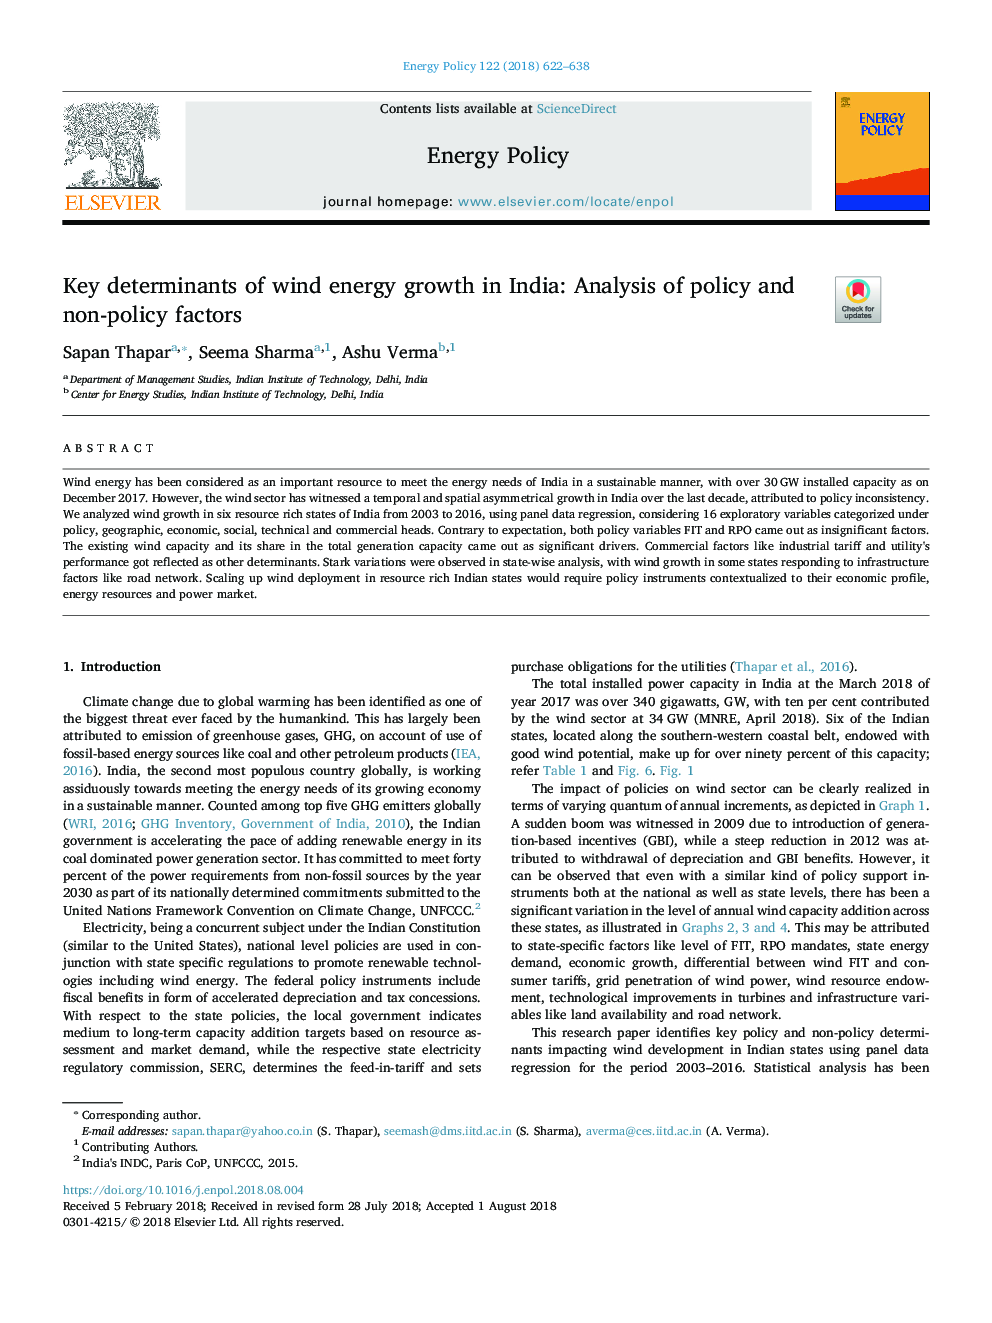 تعیین کننده های کلیدی رشد انرژی باد در هند: تجزیه و تحلیل سیاست ها و عوامل غیر سیاست